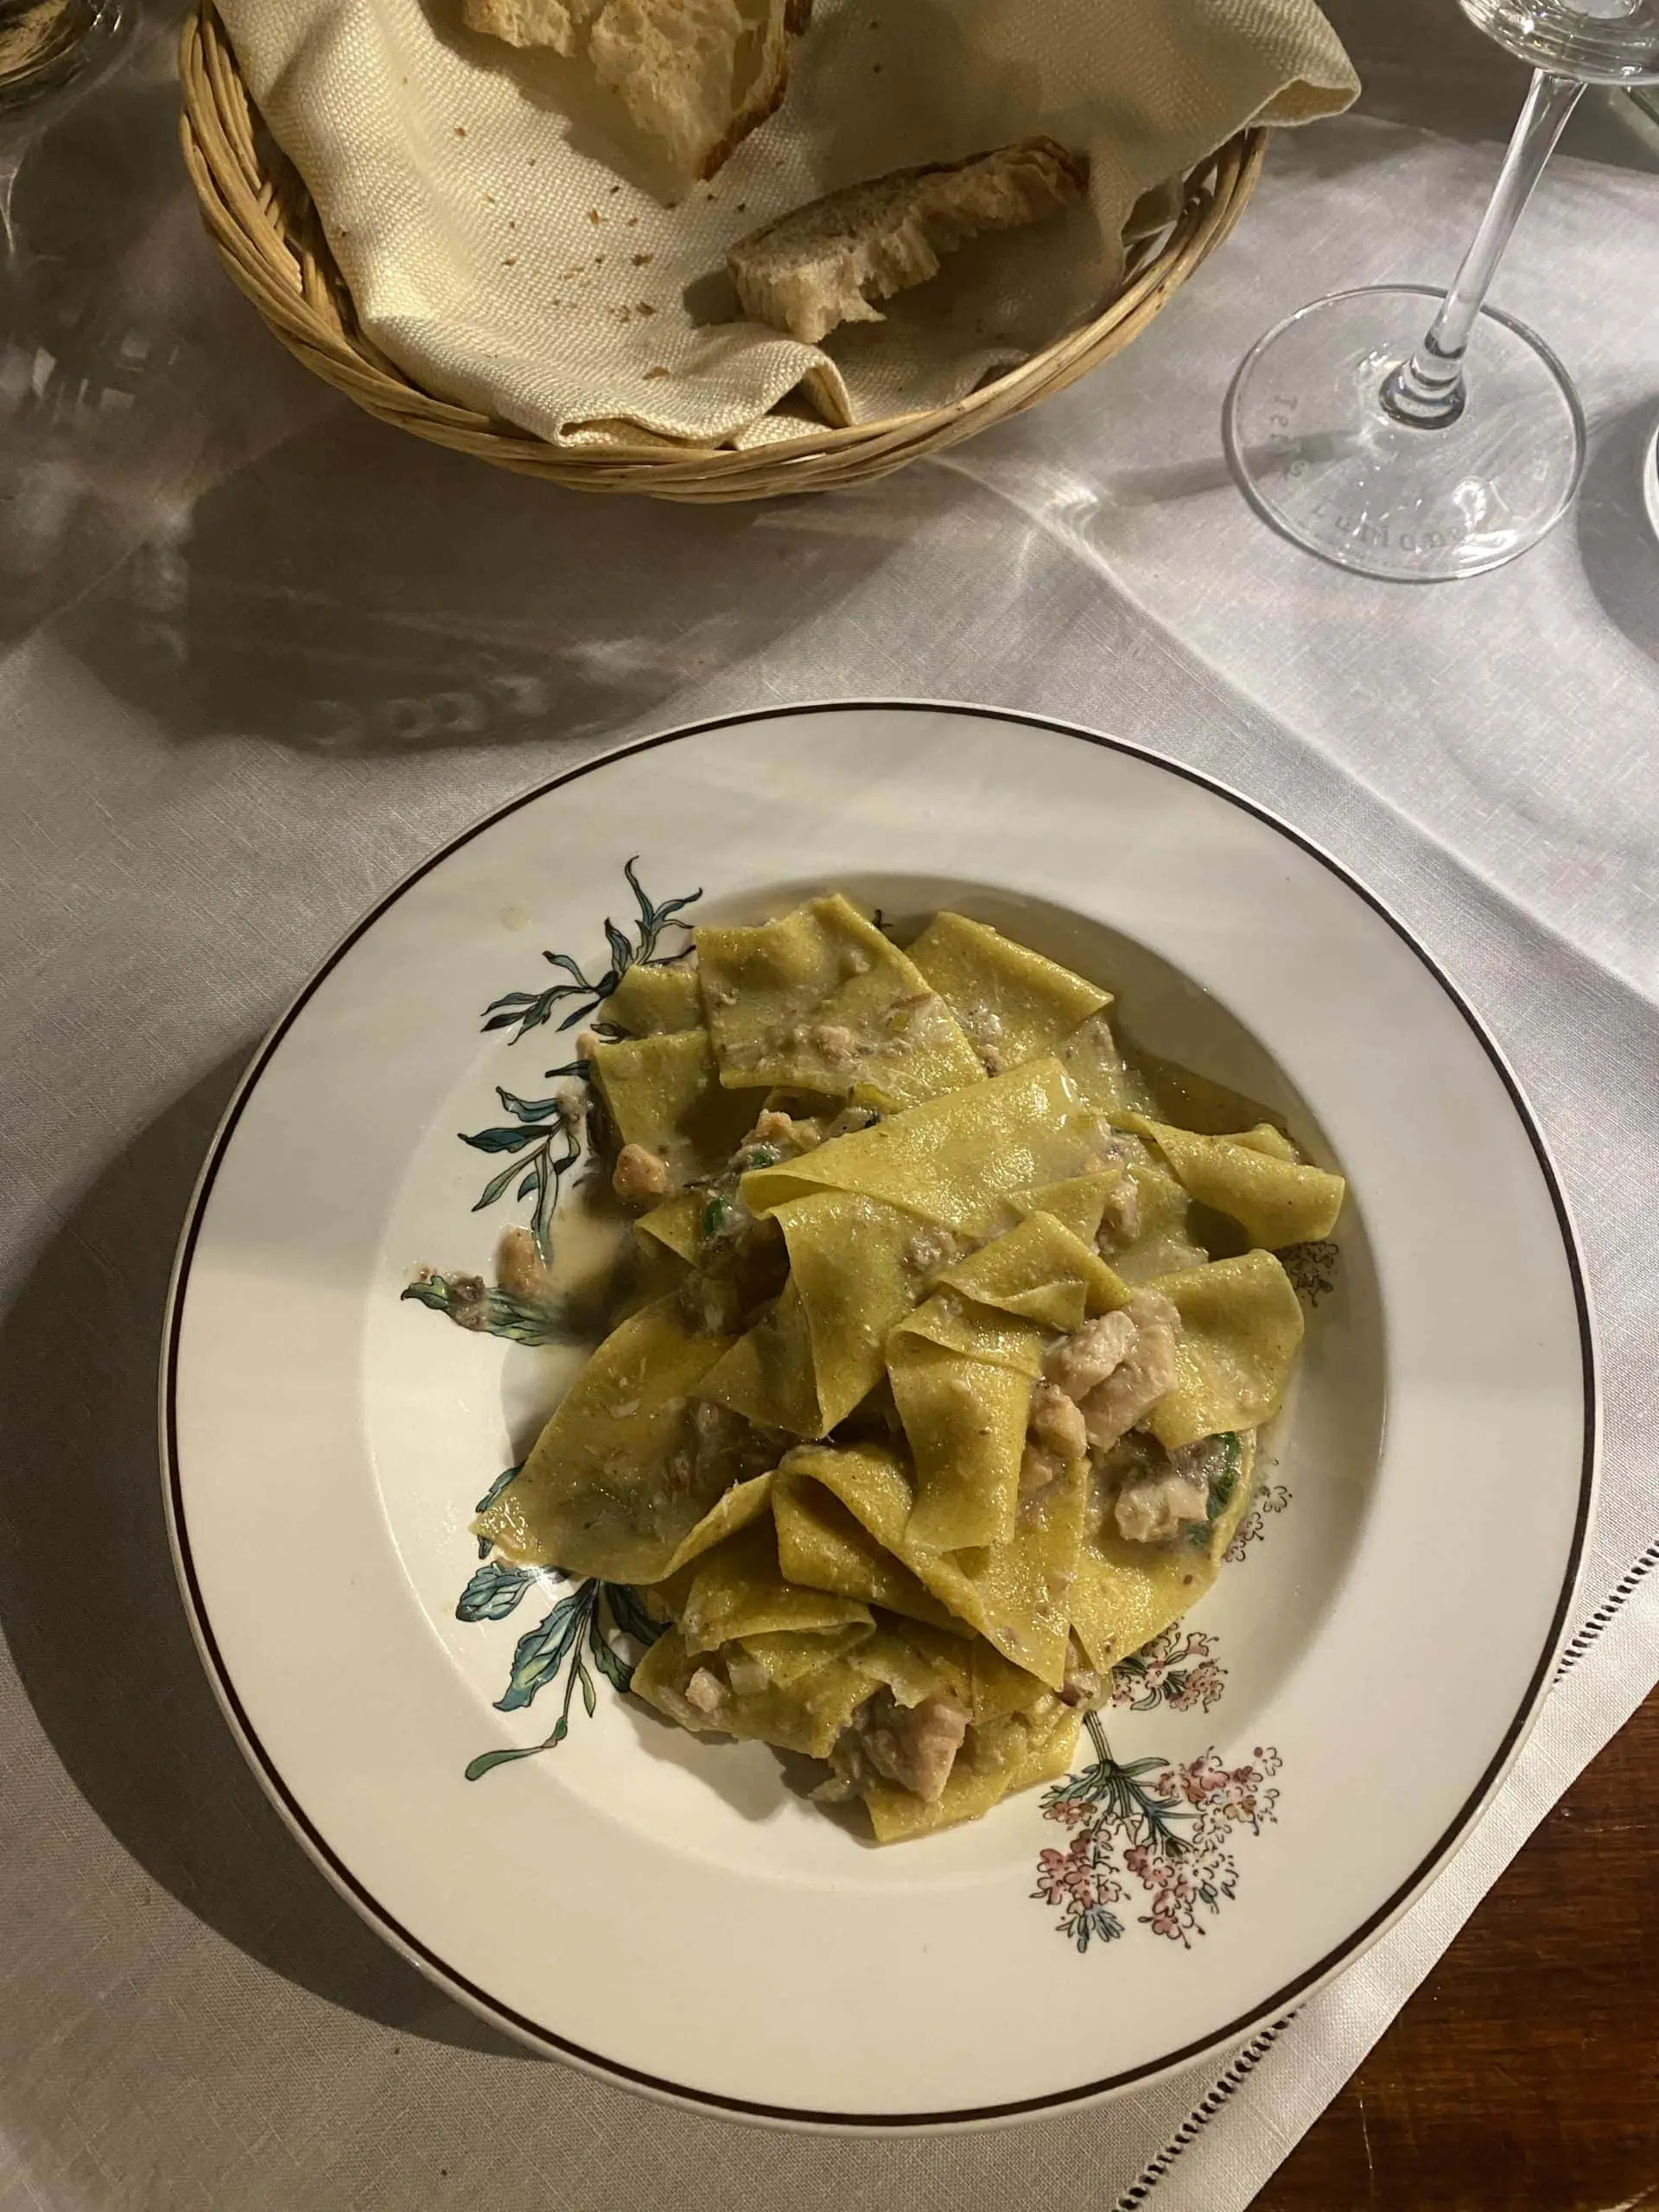 Fresh, authentic Italian dish at La Costa in Lecco, Lake Como, Italy